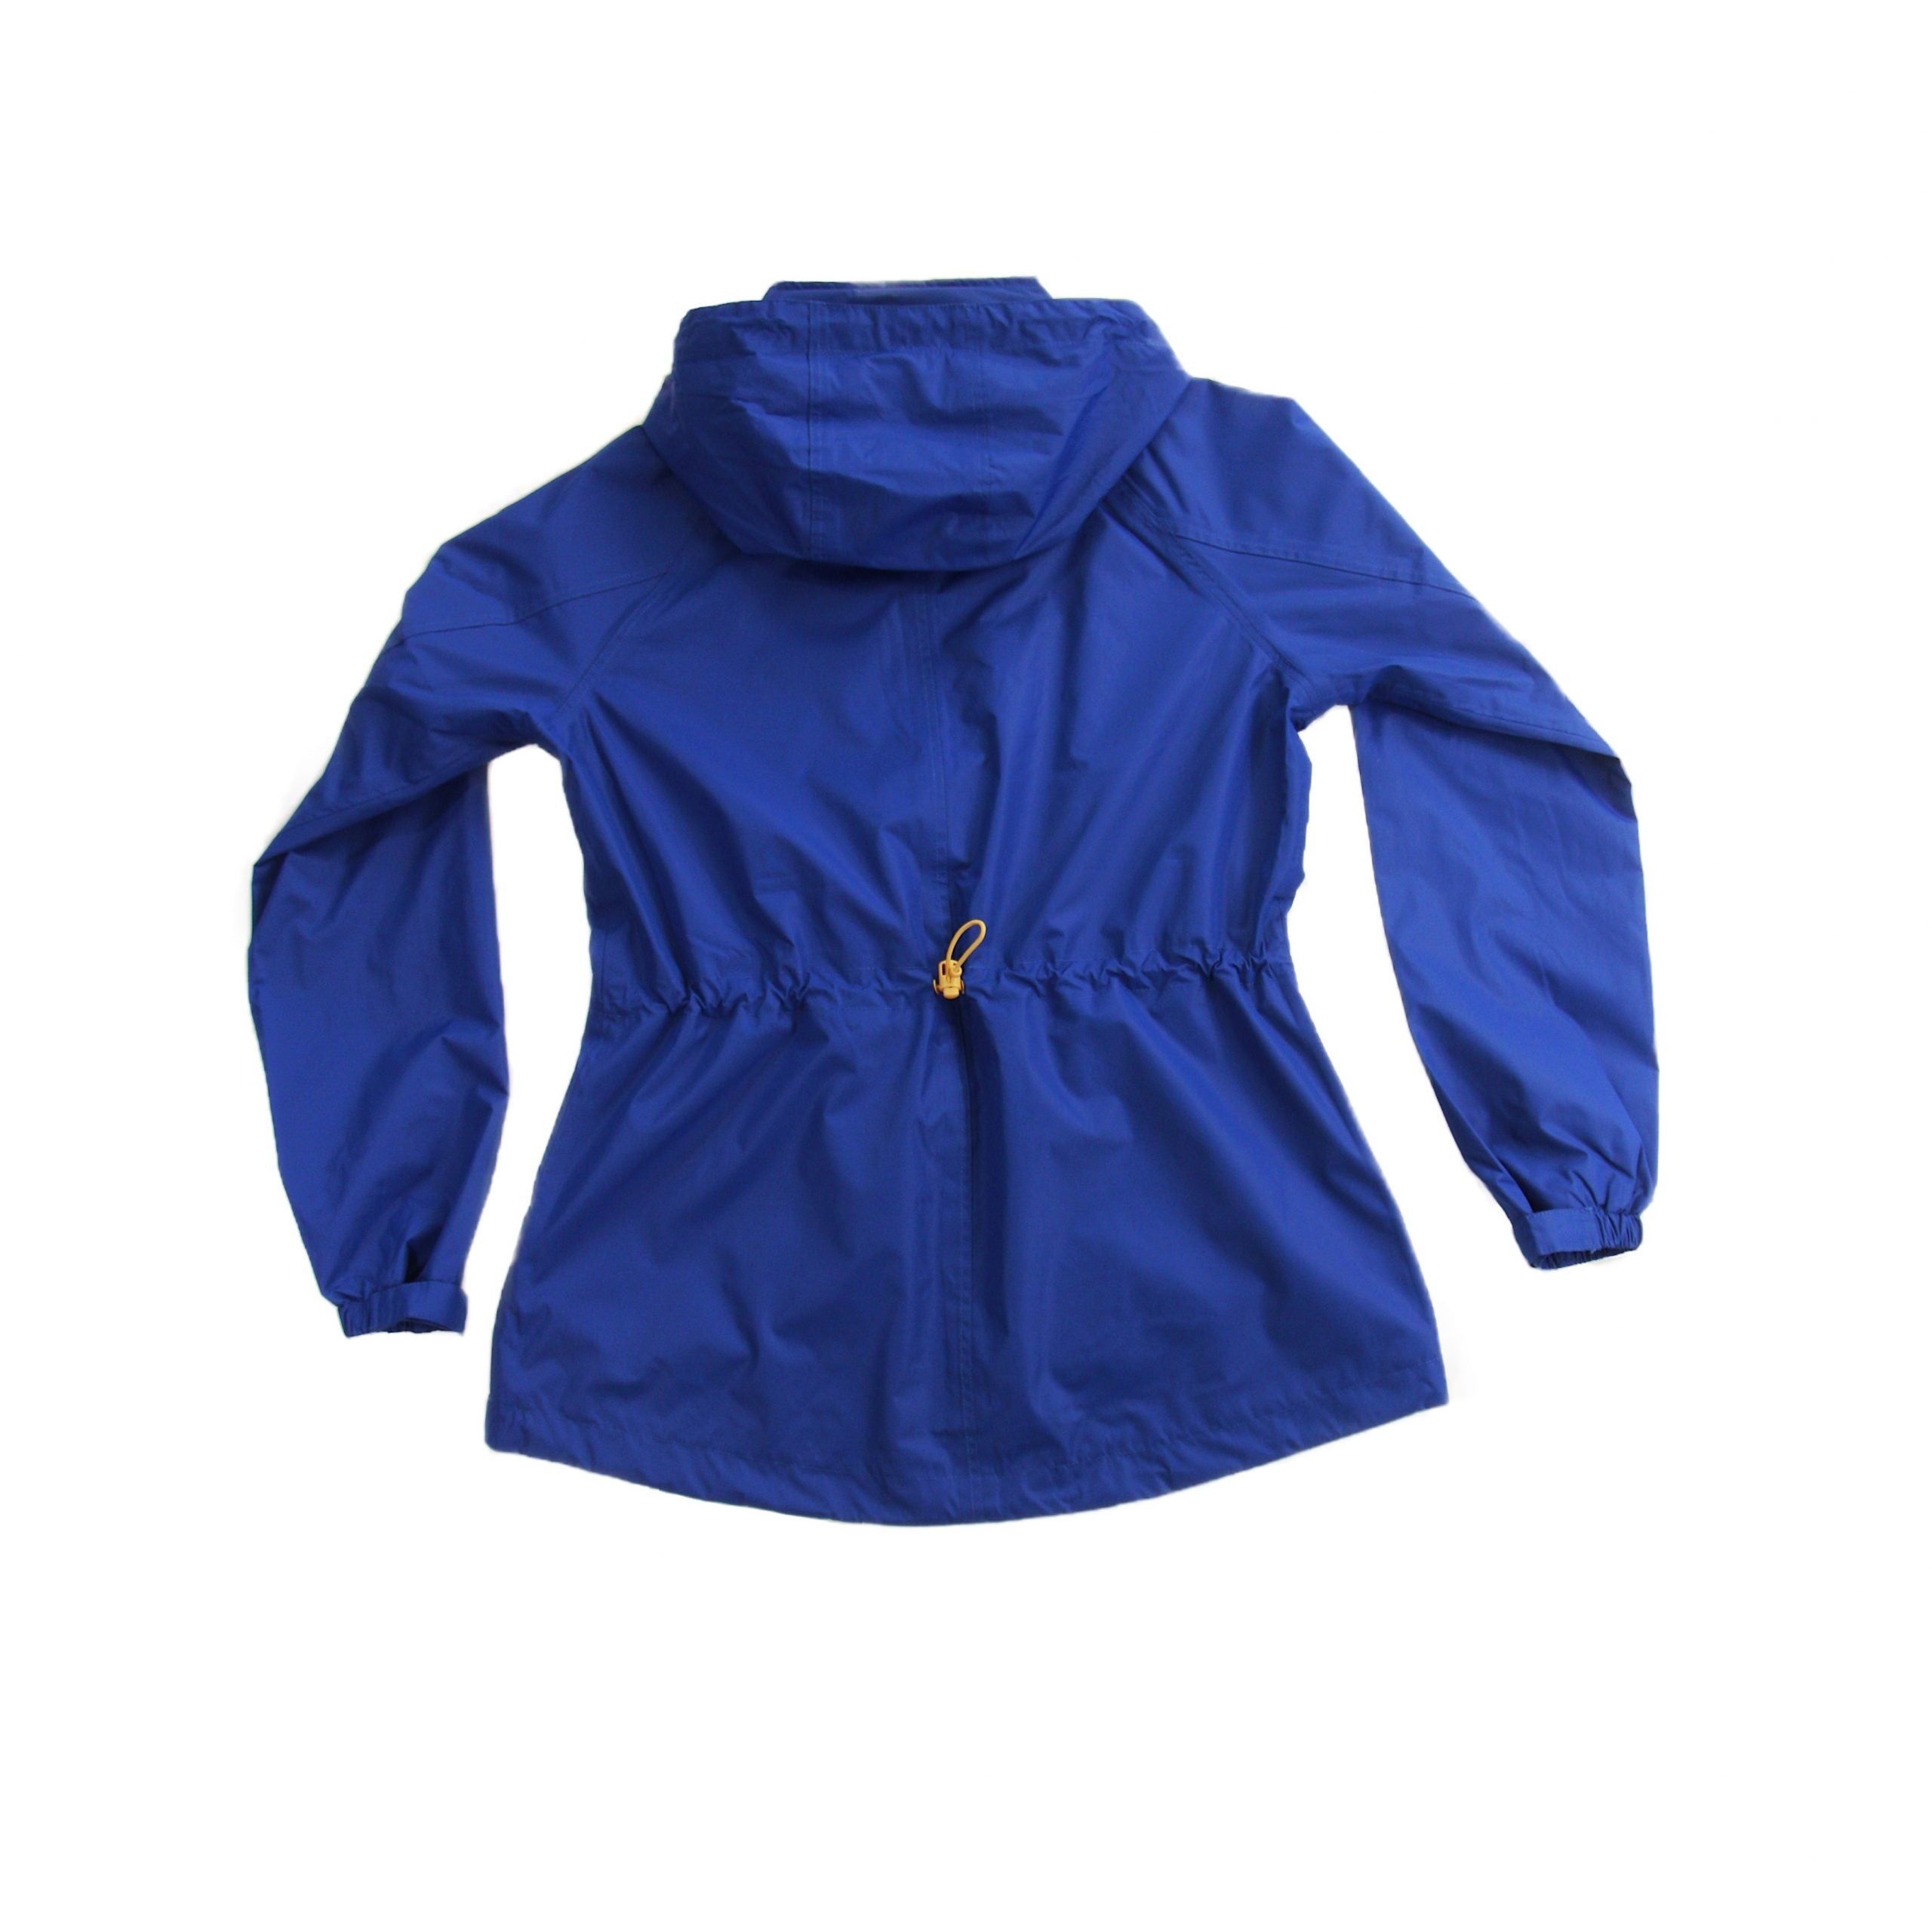 Willow Lightweight Waterproof Jacket - Sea Blue